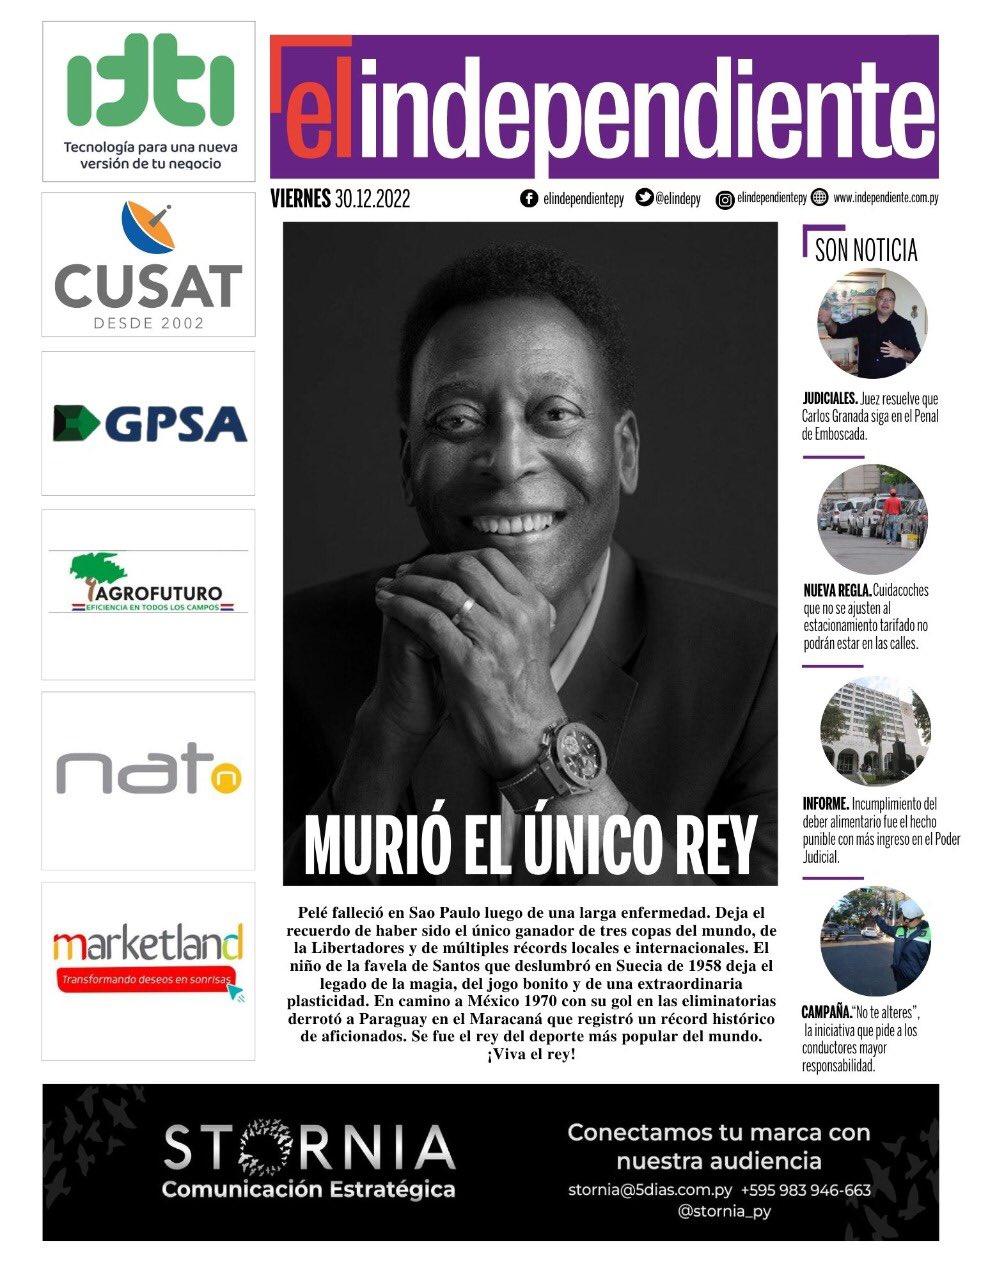 Imagem mostra capa de jornal com foto do Pelé sorrindo